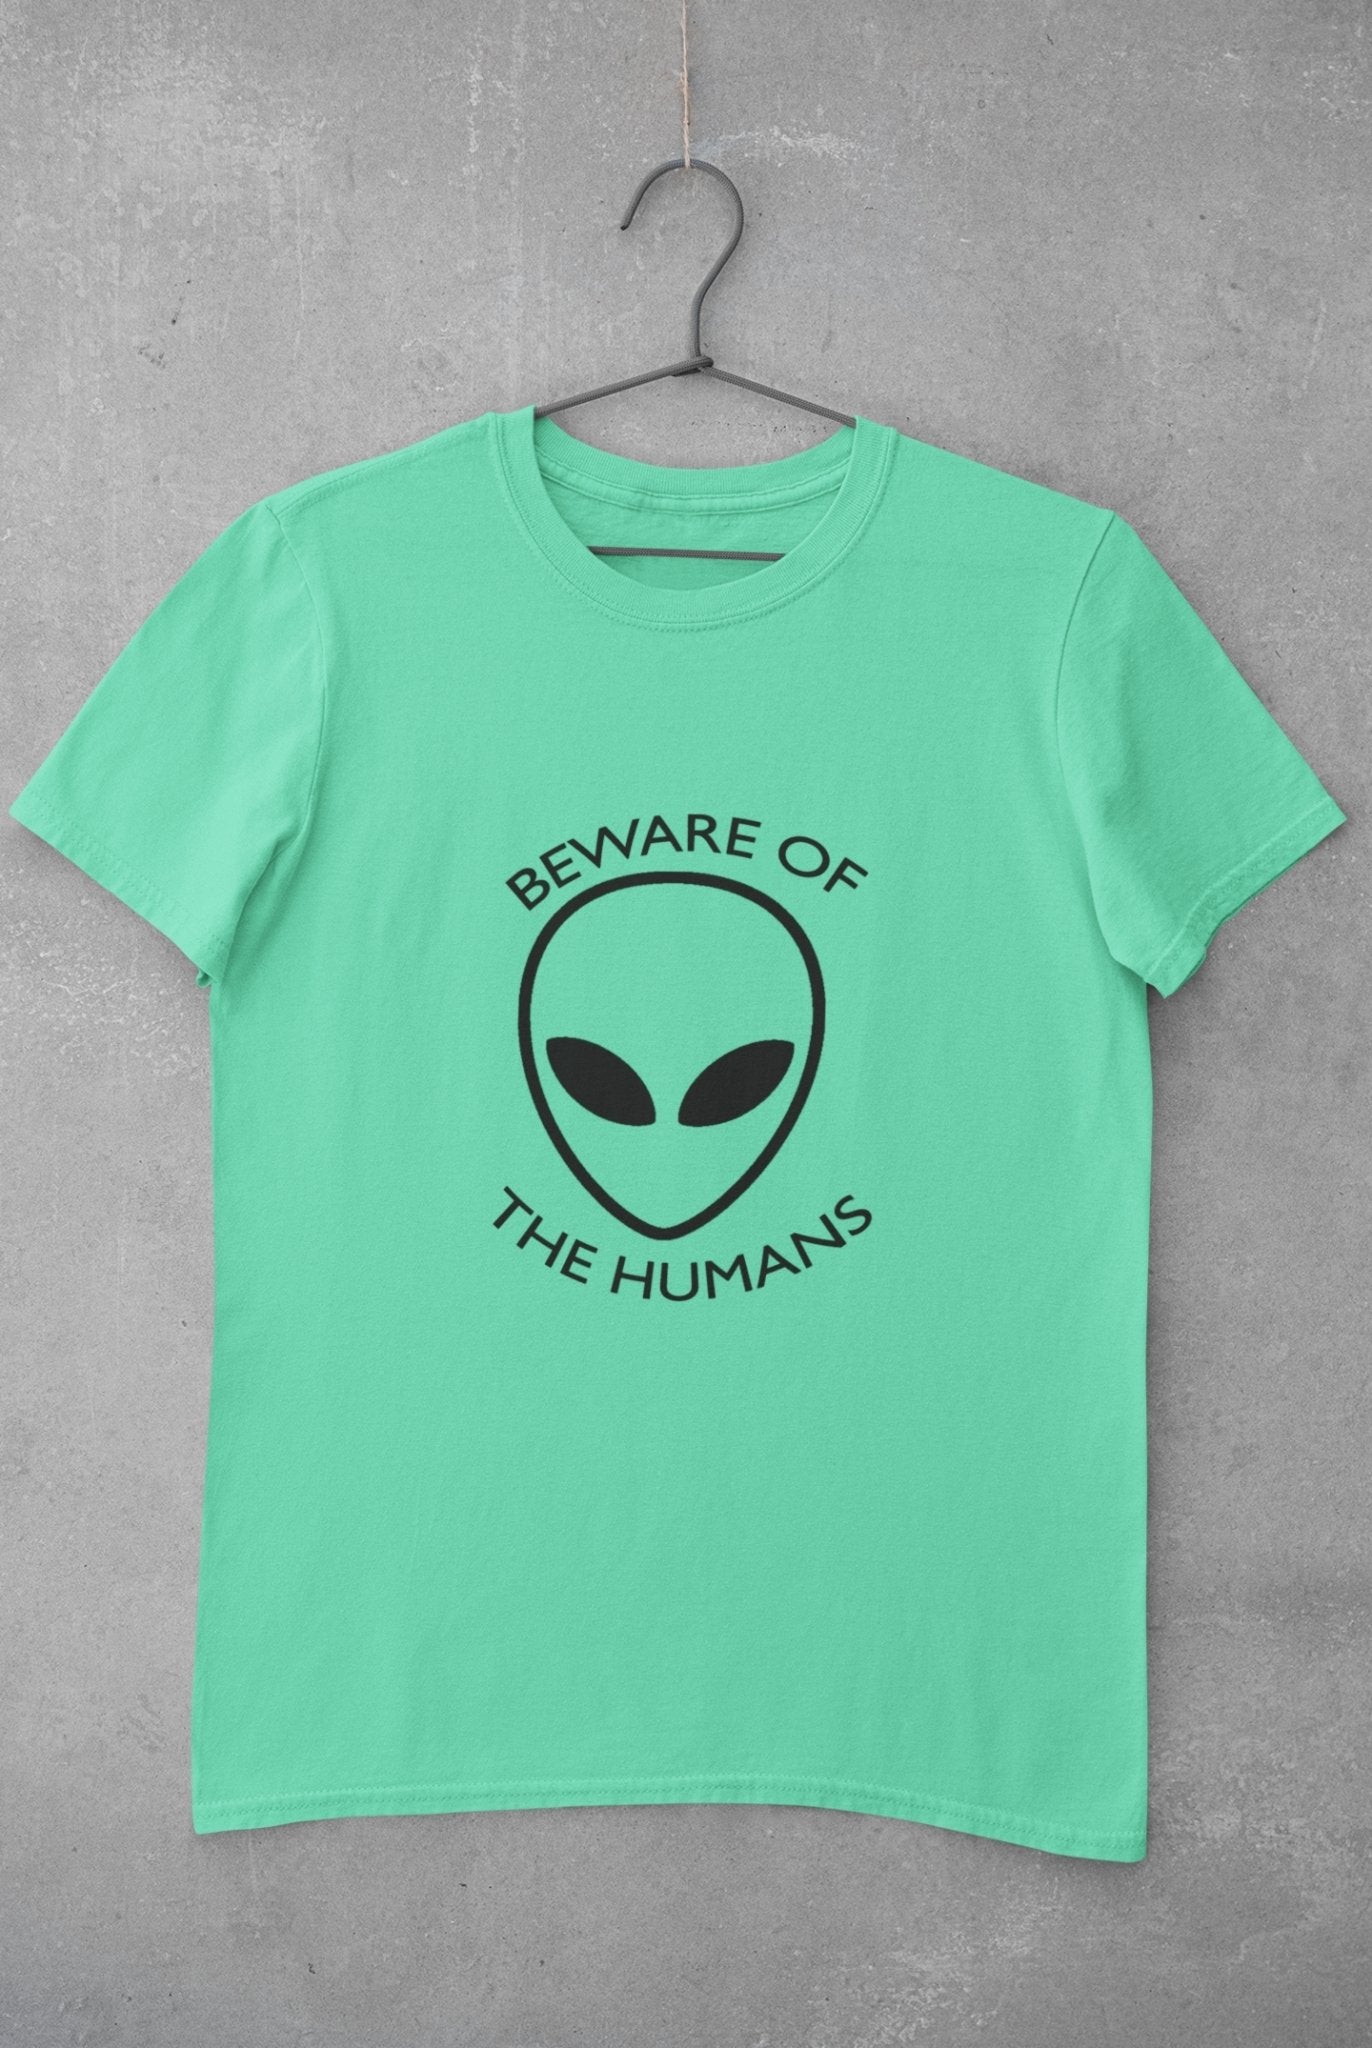 Beware of the Humans Mens Half Sleeves T-shirt- FunkyTeesClub - Funky Tees Club